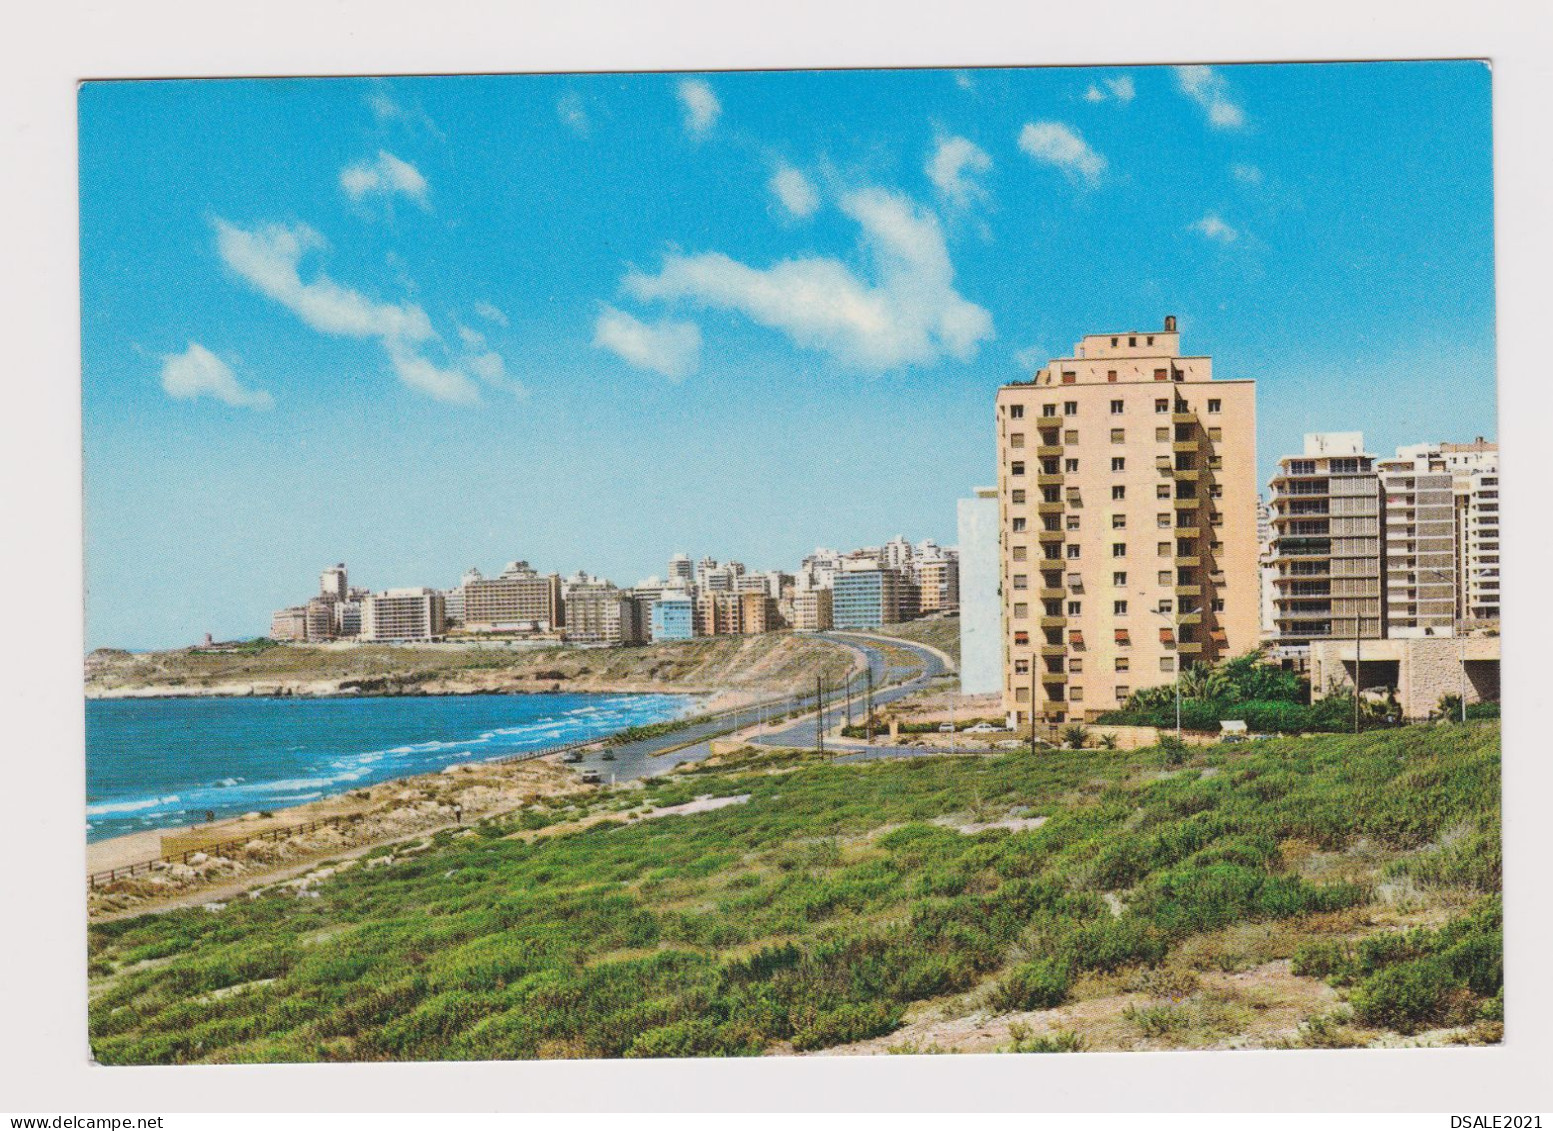 Lebanon Liban Raouche Quarter, New Buildings, View Vintage Photo Postcard RPPc AK (1295) - Liban